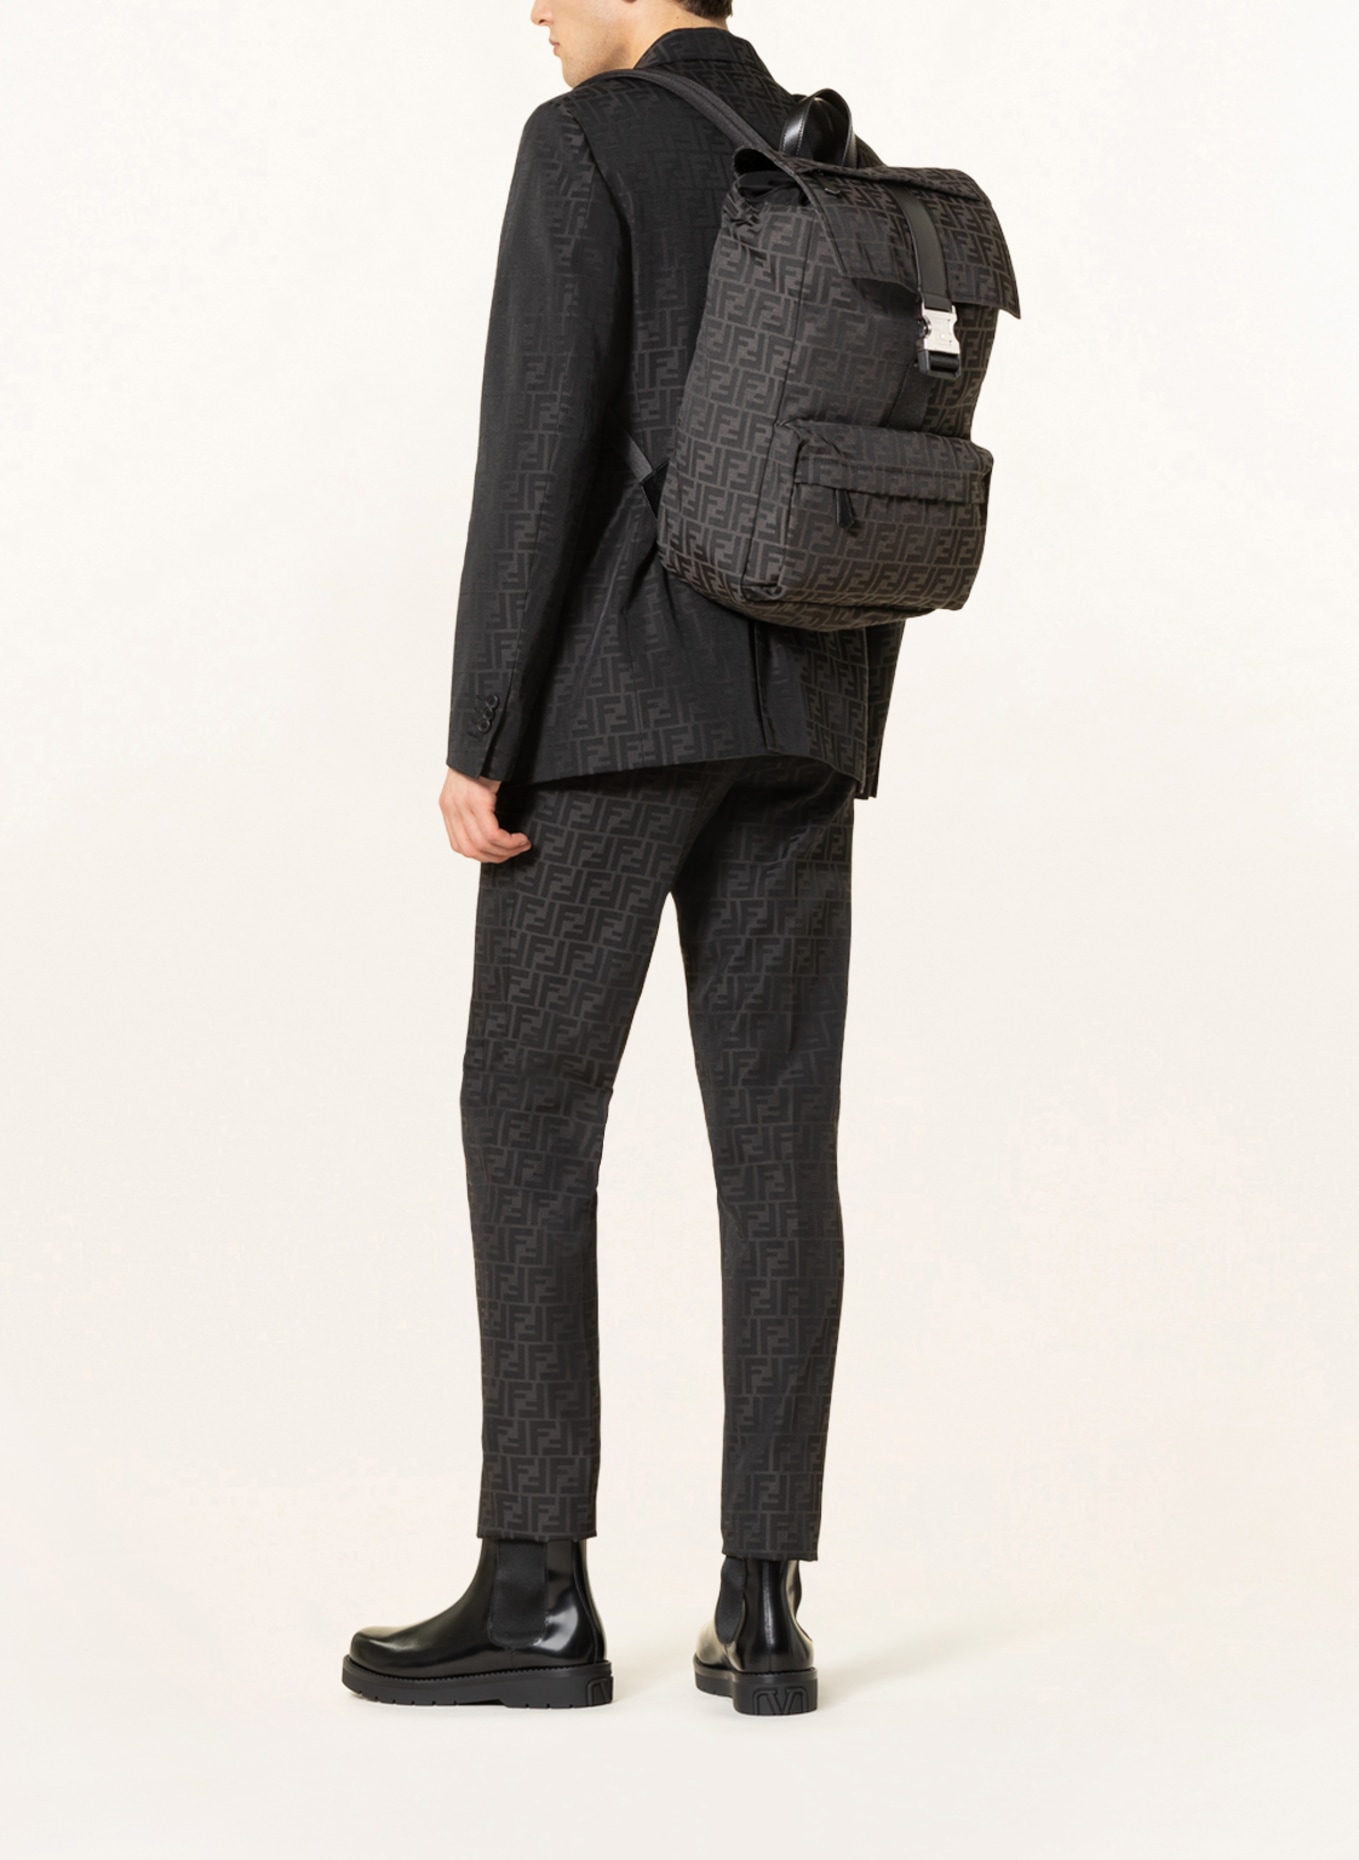 FENDI Backpack FENDILESS in black/ gray | Breuninger